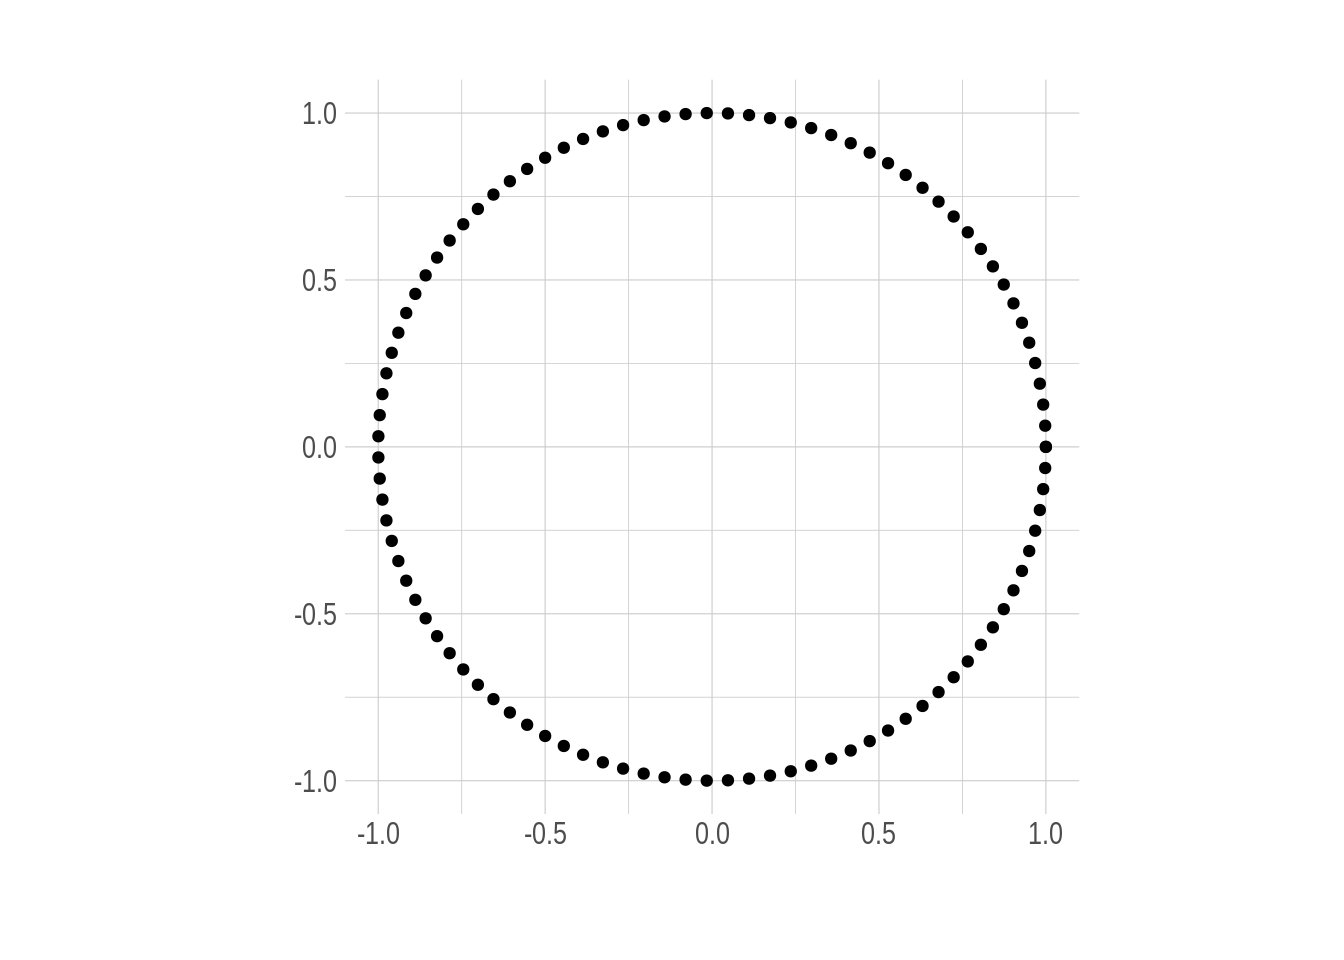 The unit circle